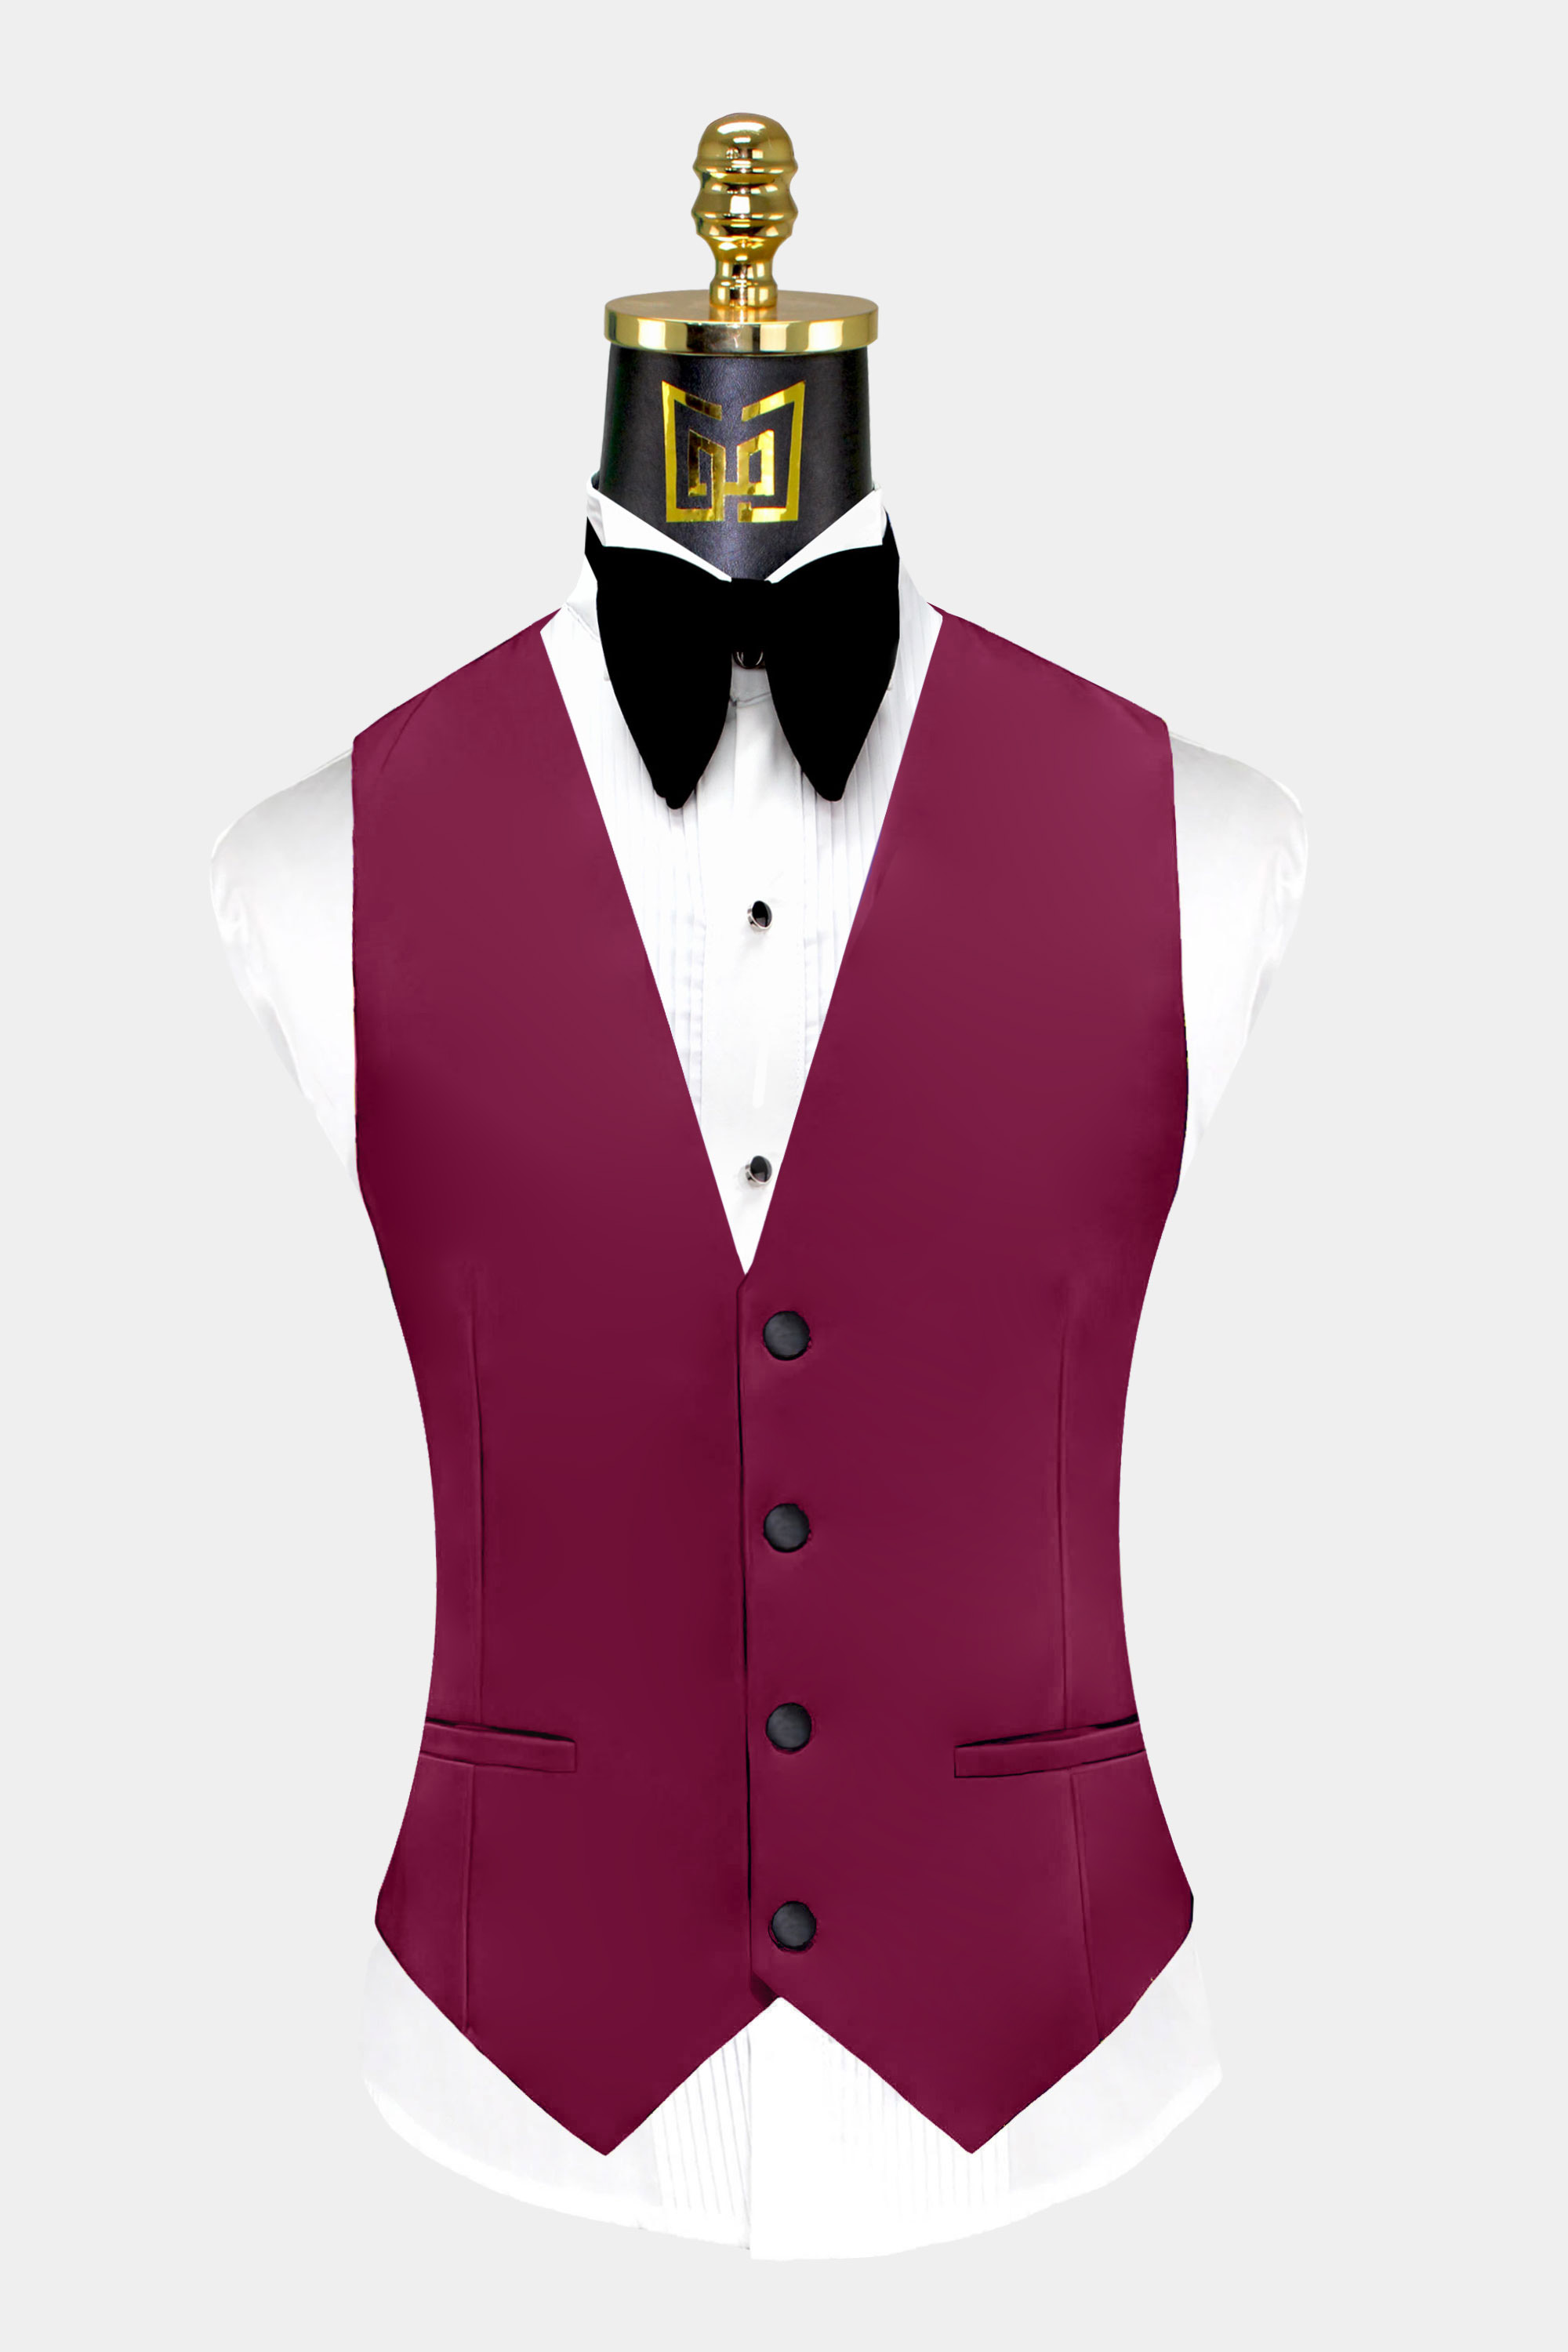 Mens-Maroon-Burgundy-Tuxedo-Vest-Groom-Wedding-Suit-Waistcoat-from-Gentlemansguru.com